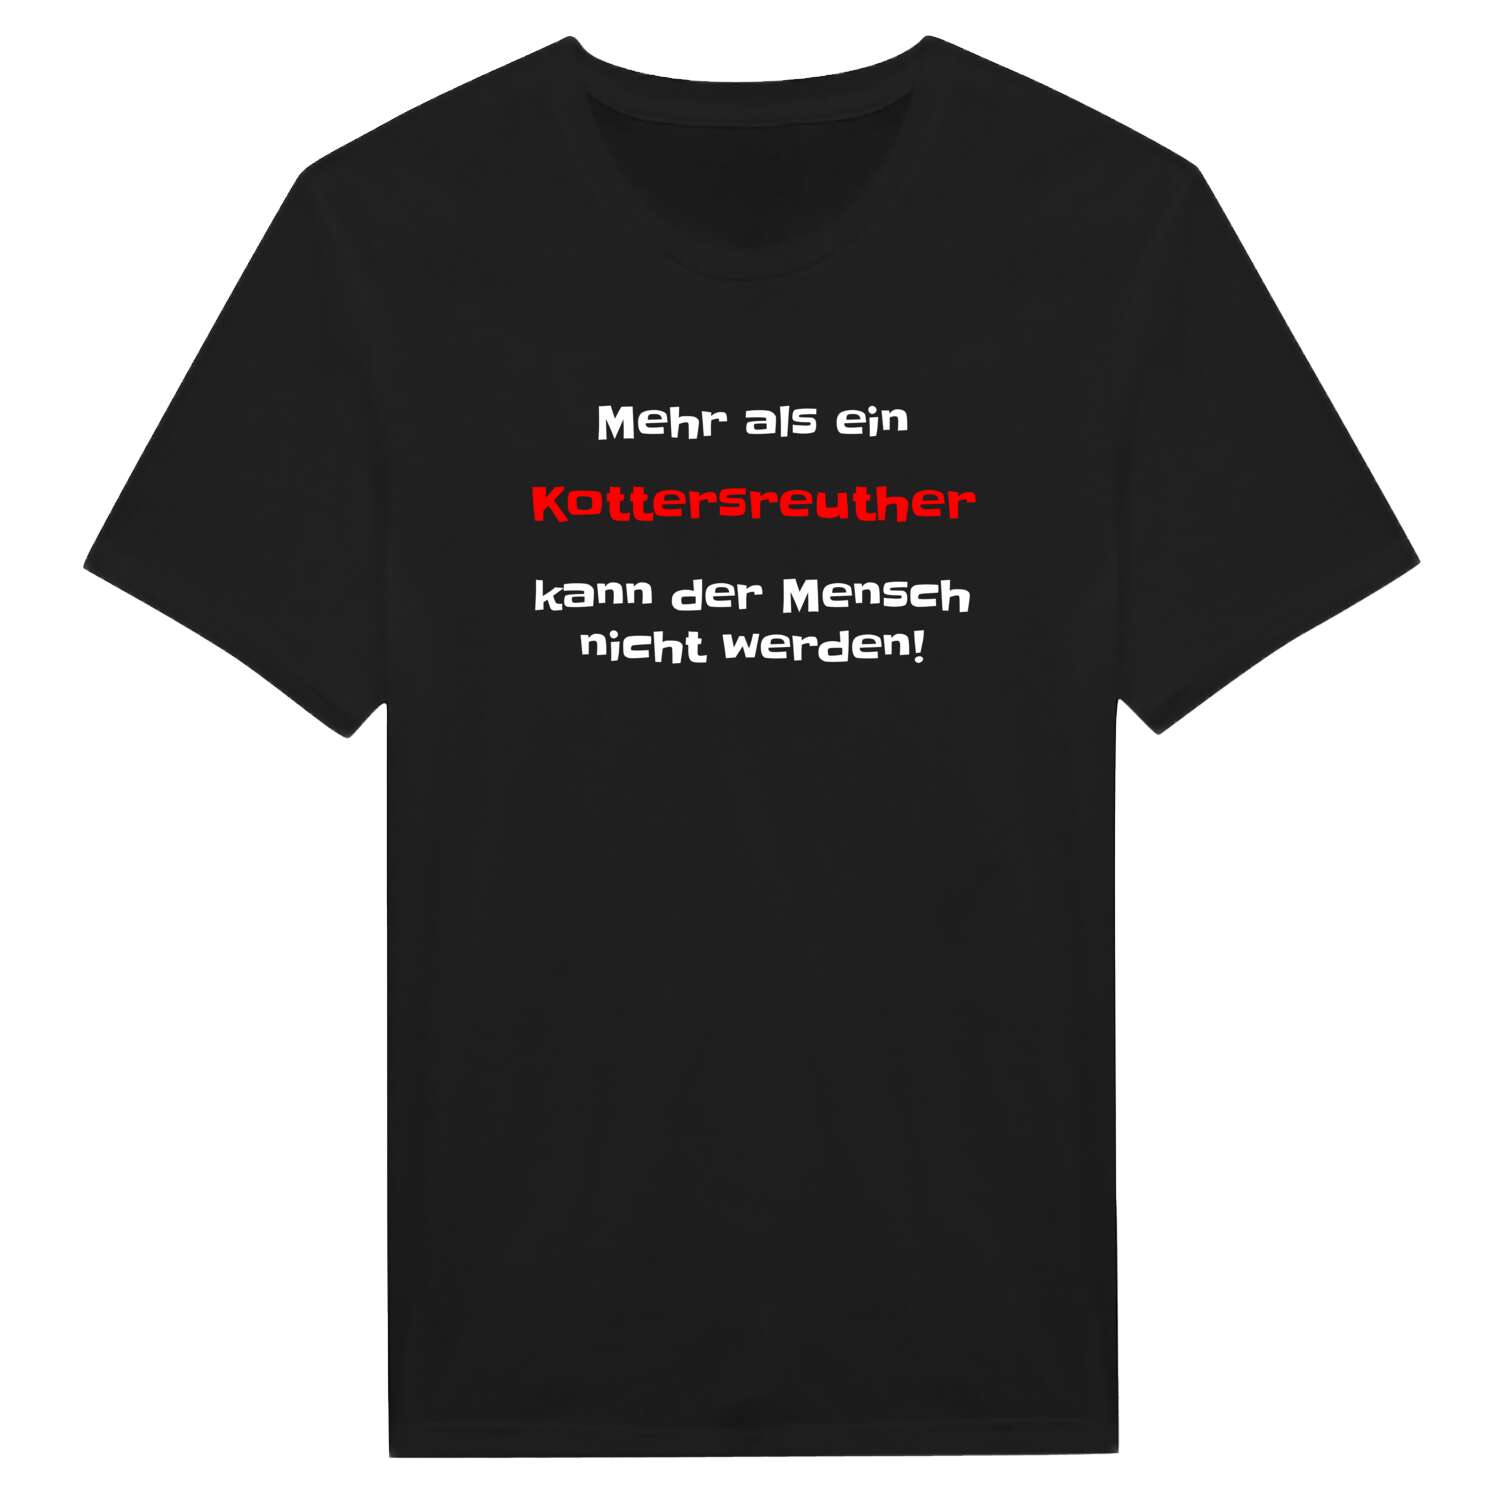 Kottersreuth T-Shirt »Mehr als ein«